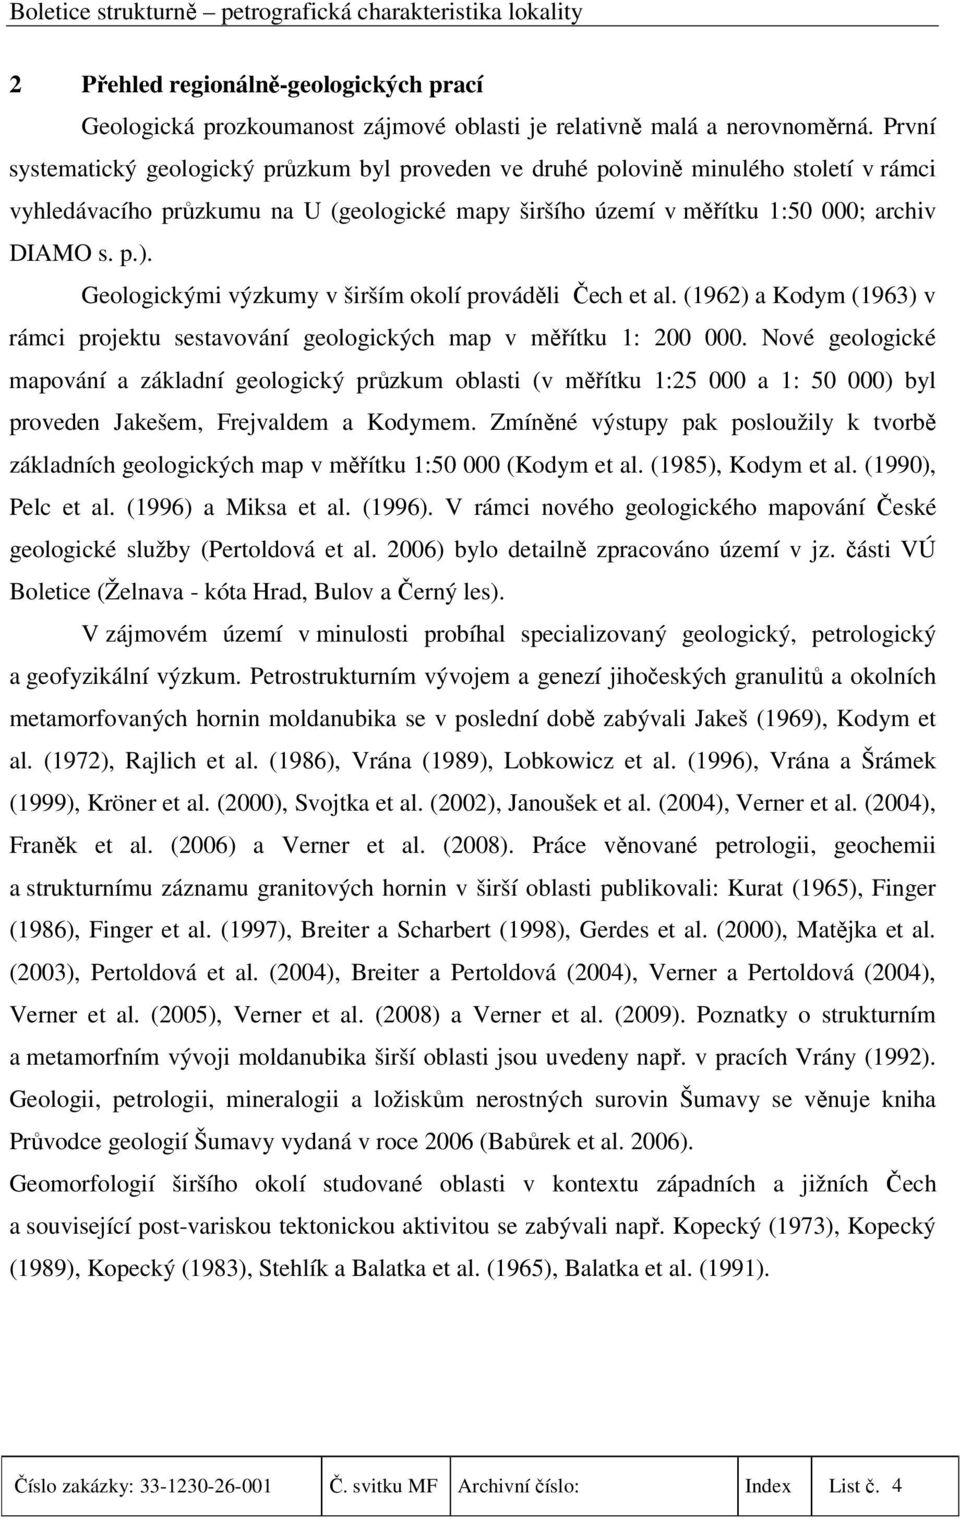 Geologickými výzkumy v širším okolí prováděli Čech et al. (1962) a Kodym (1963) v rámci projektu sestavování geologických map v měřítku 1: 200 000.